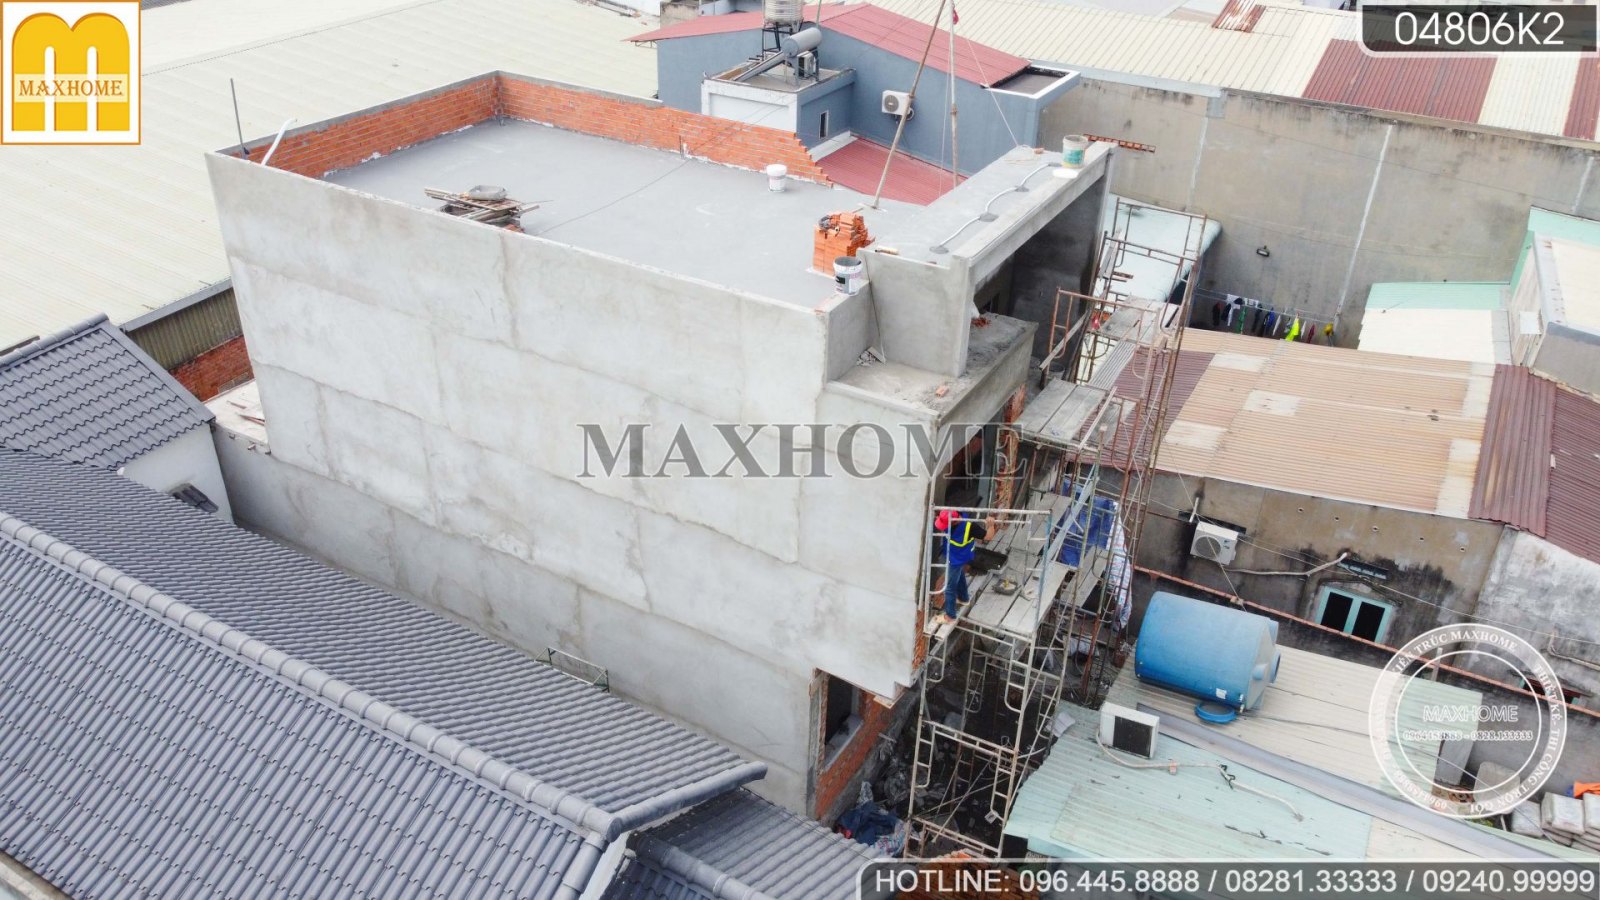 Cùng thanh tra Maxhome kiểm tra chất lượng phần thô nhà phố | MH02810